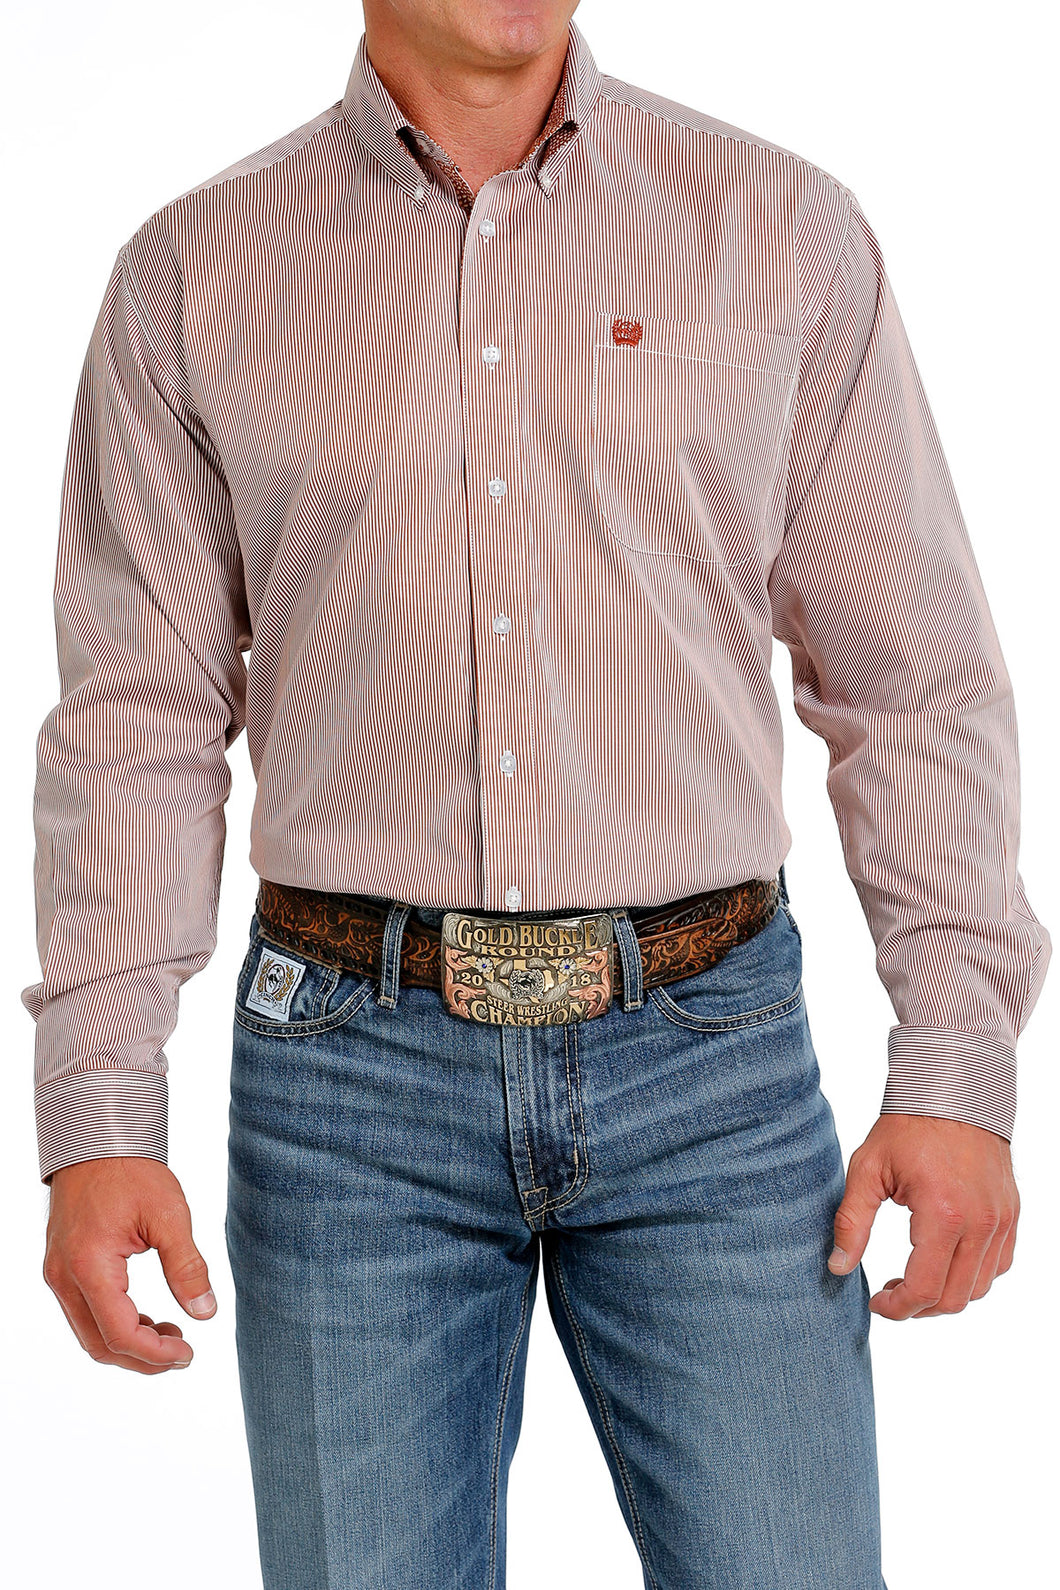 Pard's Western Shop Men's Cinch Brown/White Micro Stripe TENCEL Button-Down Shirt